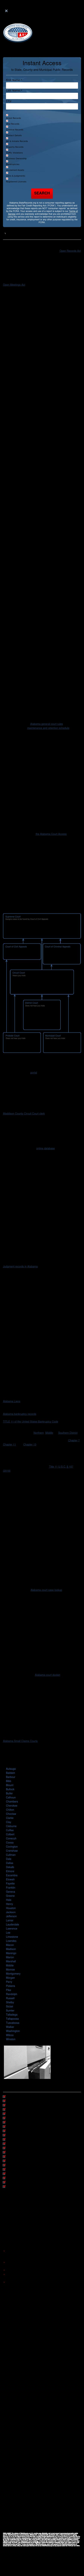 Alabama State Records - Birmingham AL Lawyers